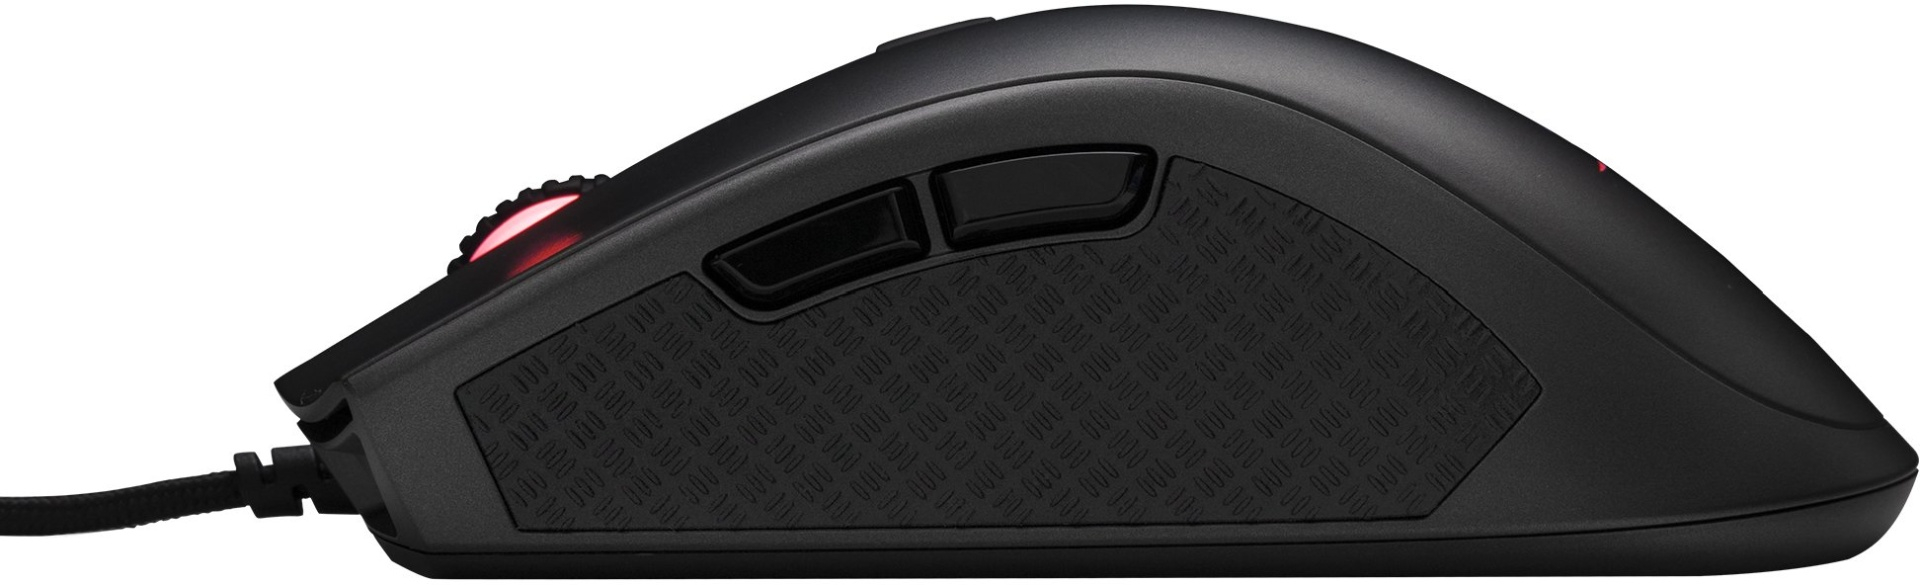 Мышка игровая проводная HyperX Pulsefire Pro RGB (HX-MC003B), Черный